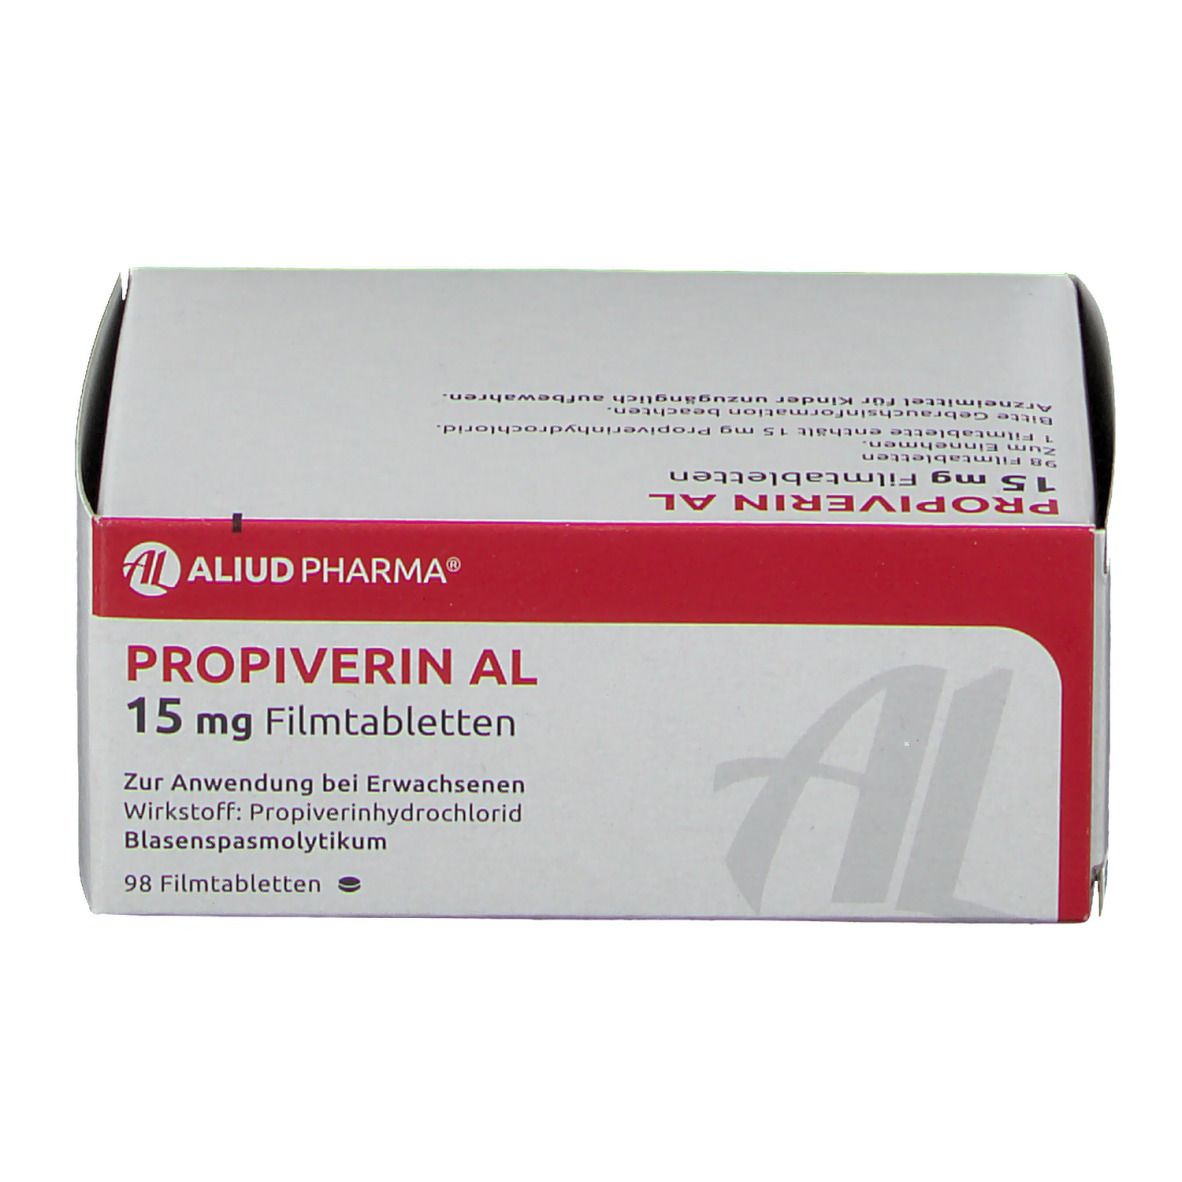 Propiverin AL 15 mg